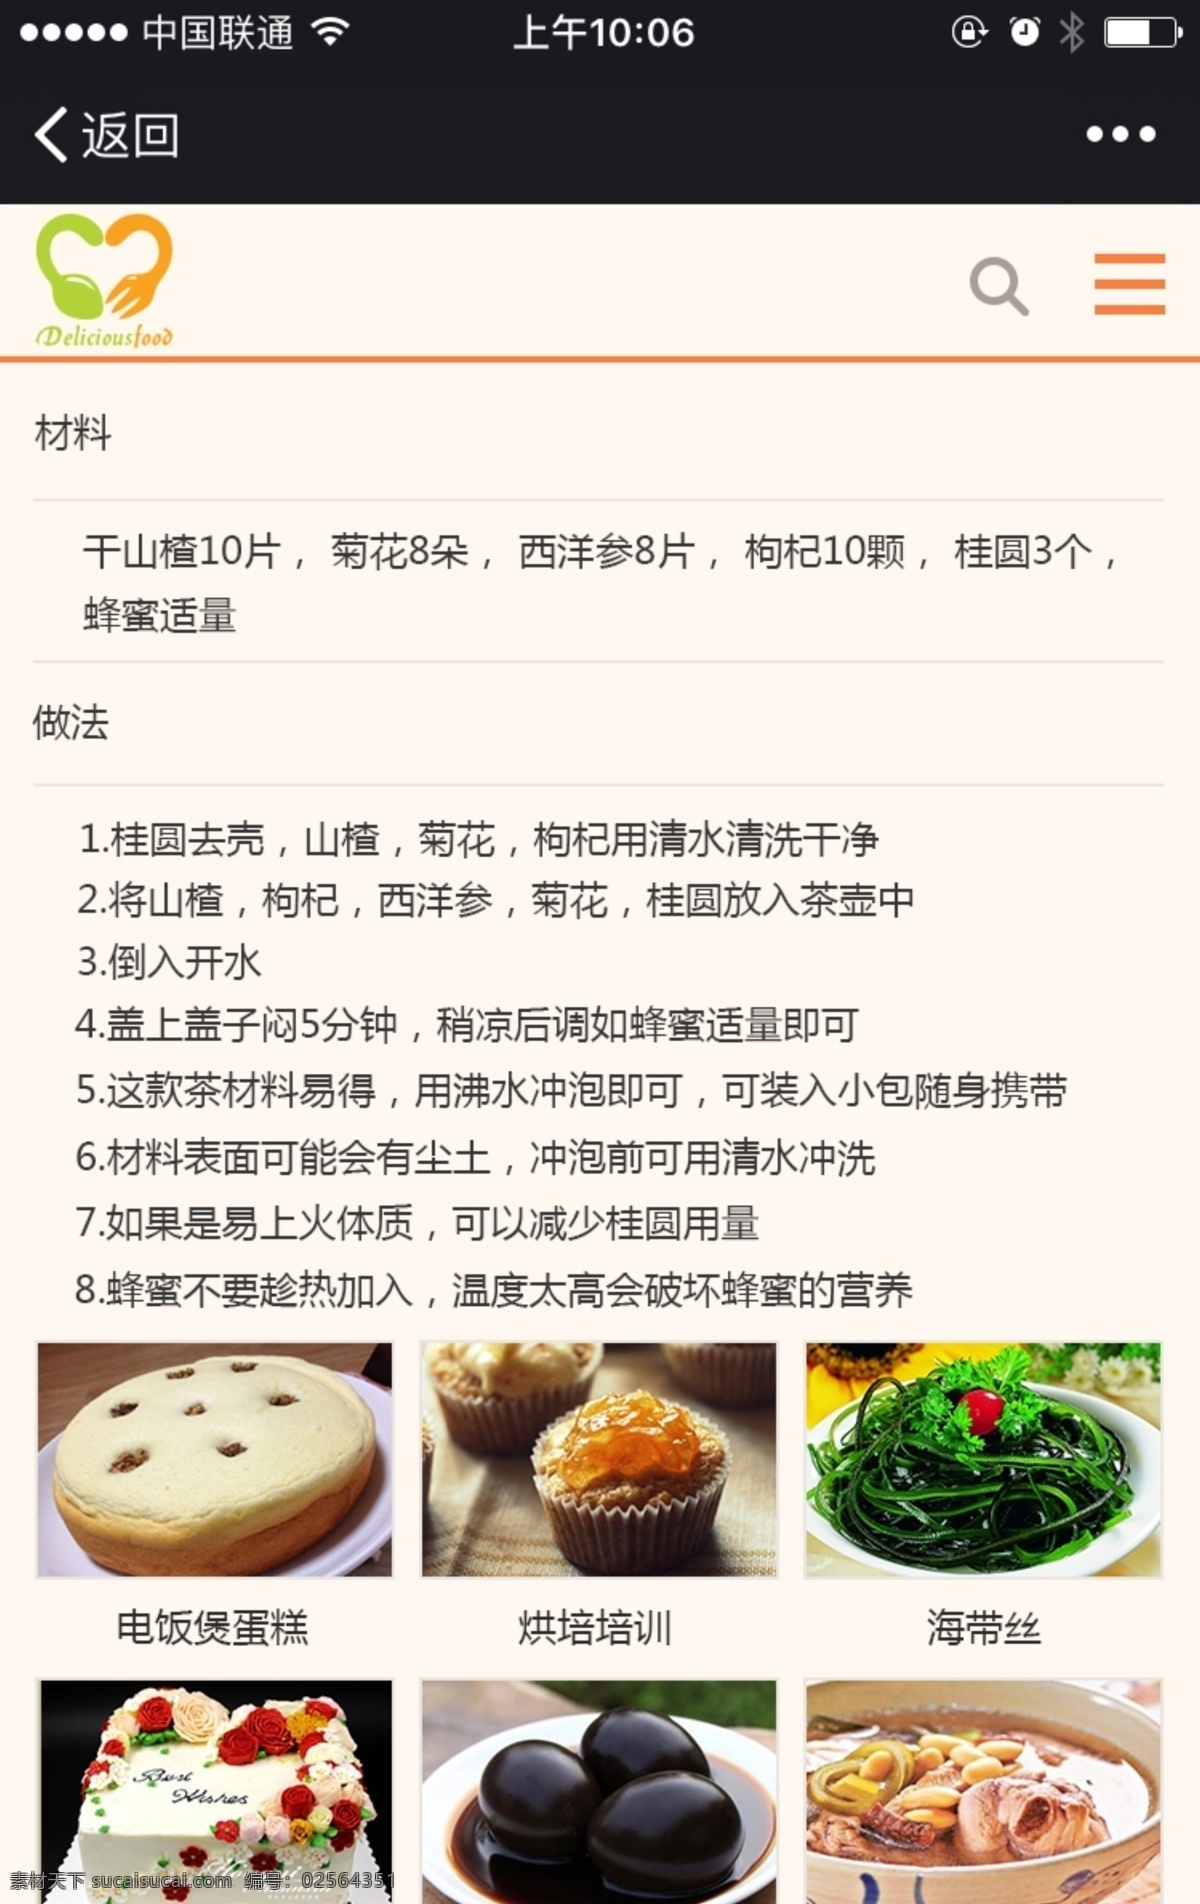 美食 厨房 菜谱 app 简单 移动端界面 app设计